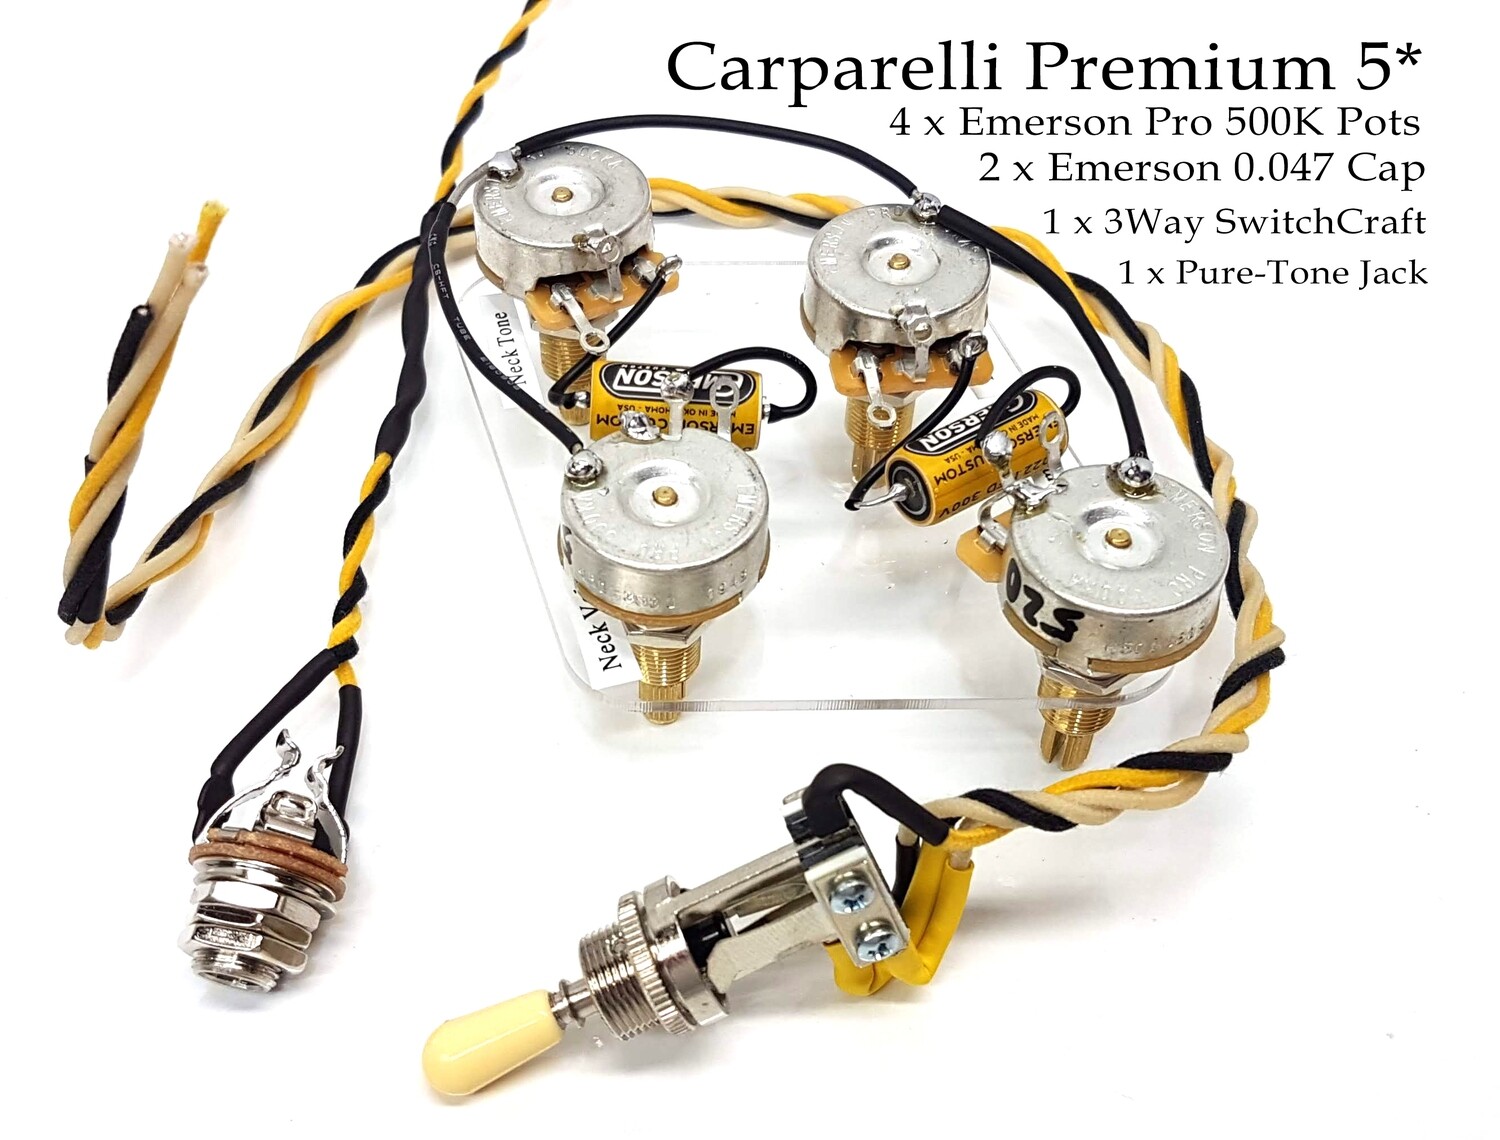 Carparelli 5* Premium Les Paul Vintage 50's Style Harness